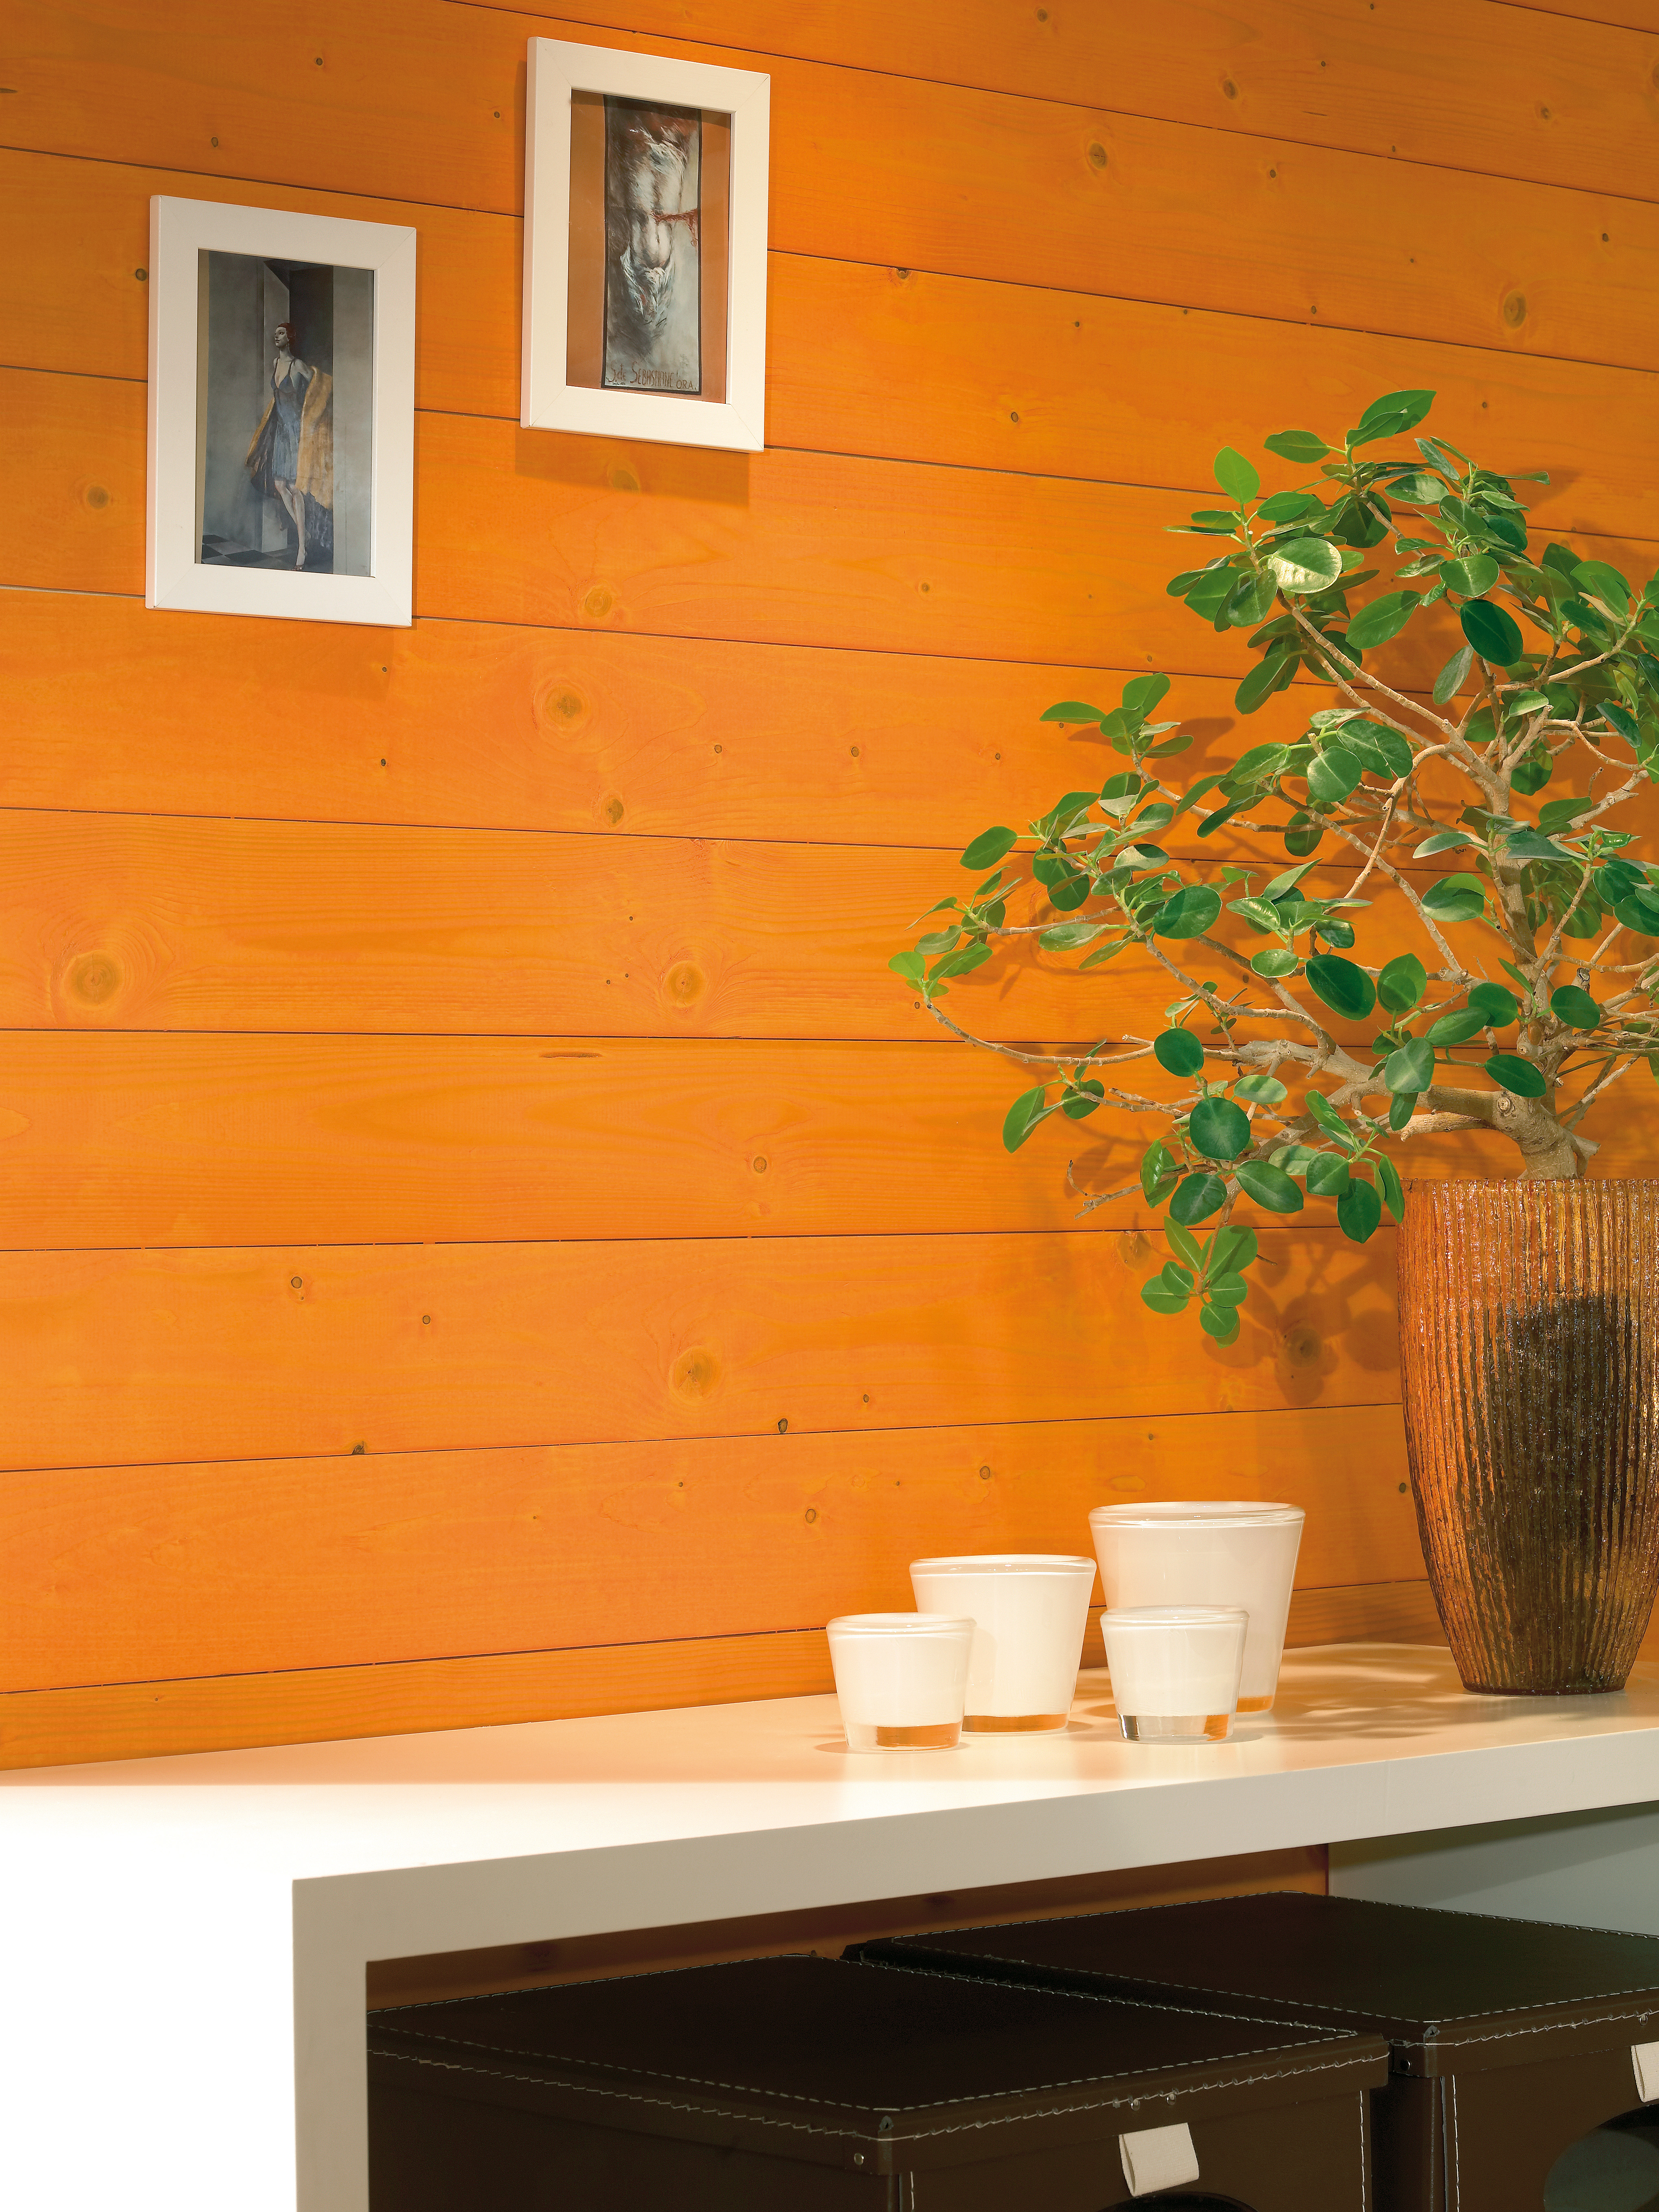 Eine Zimmerpflanze und dekorative Kerzen auf einem Selbst vor einer orange gebeizten holzgetäfelten Wand